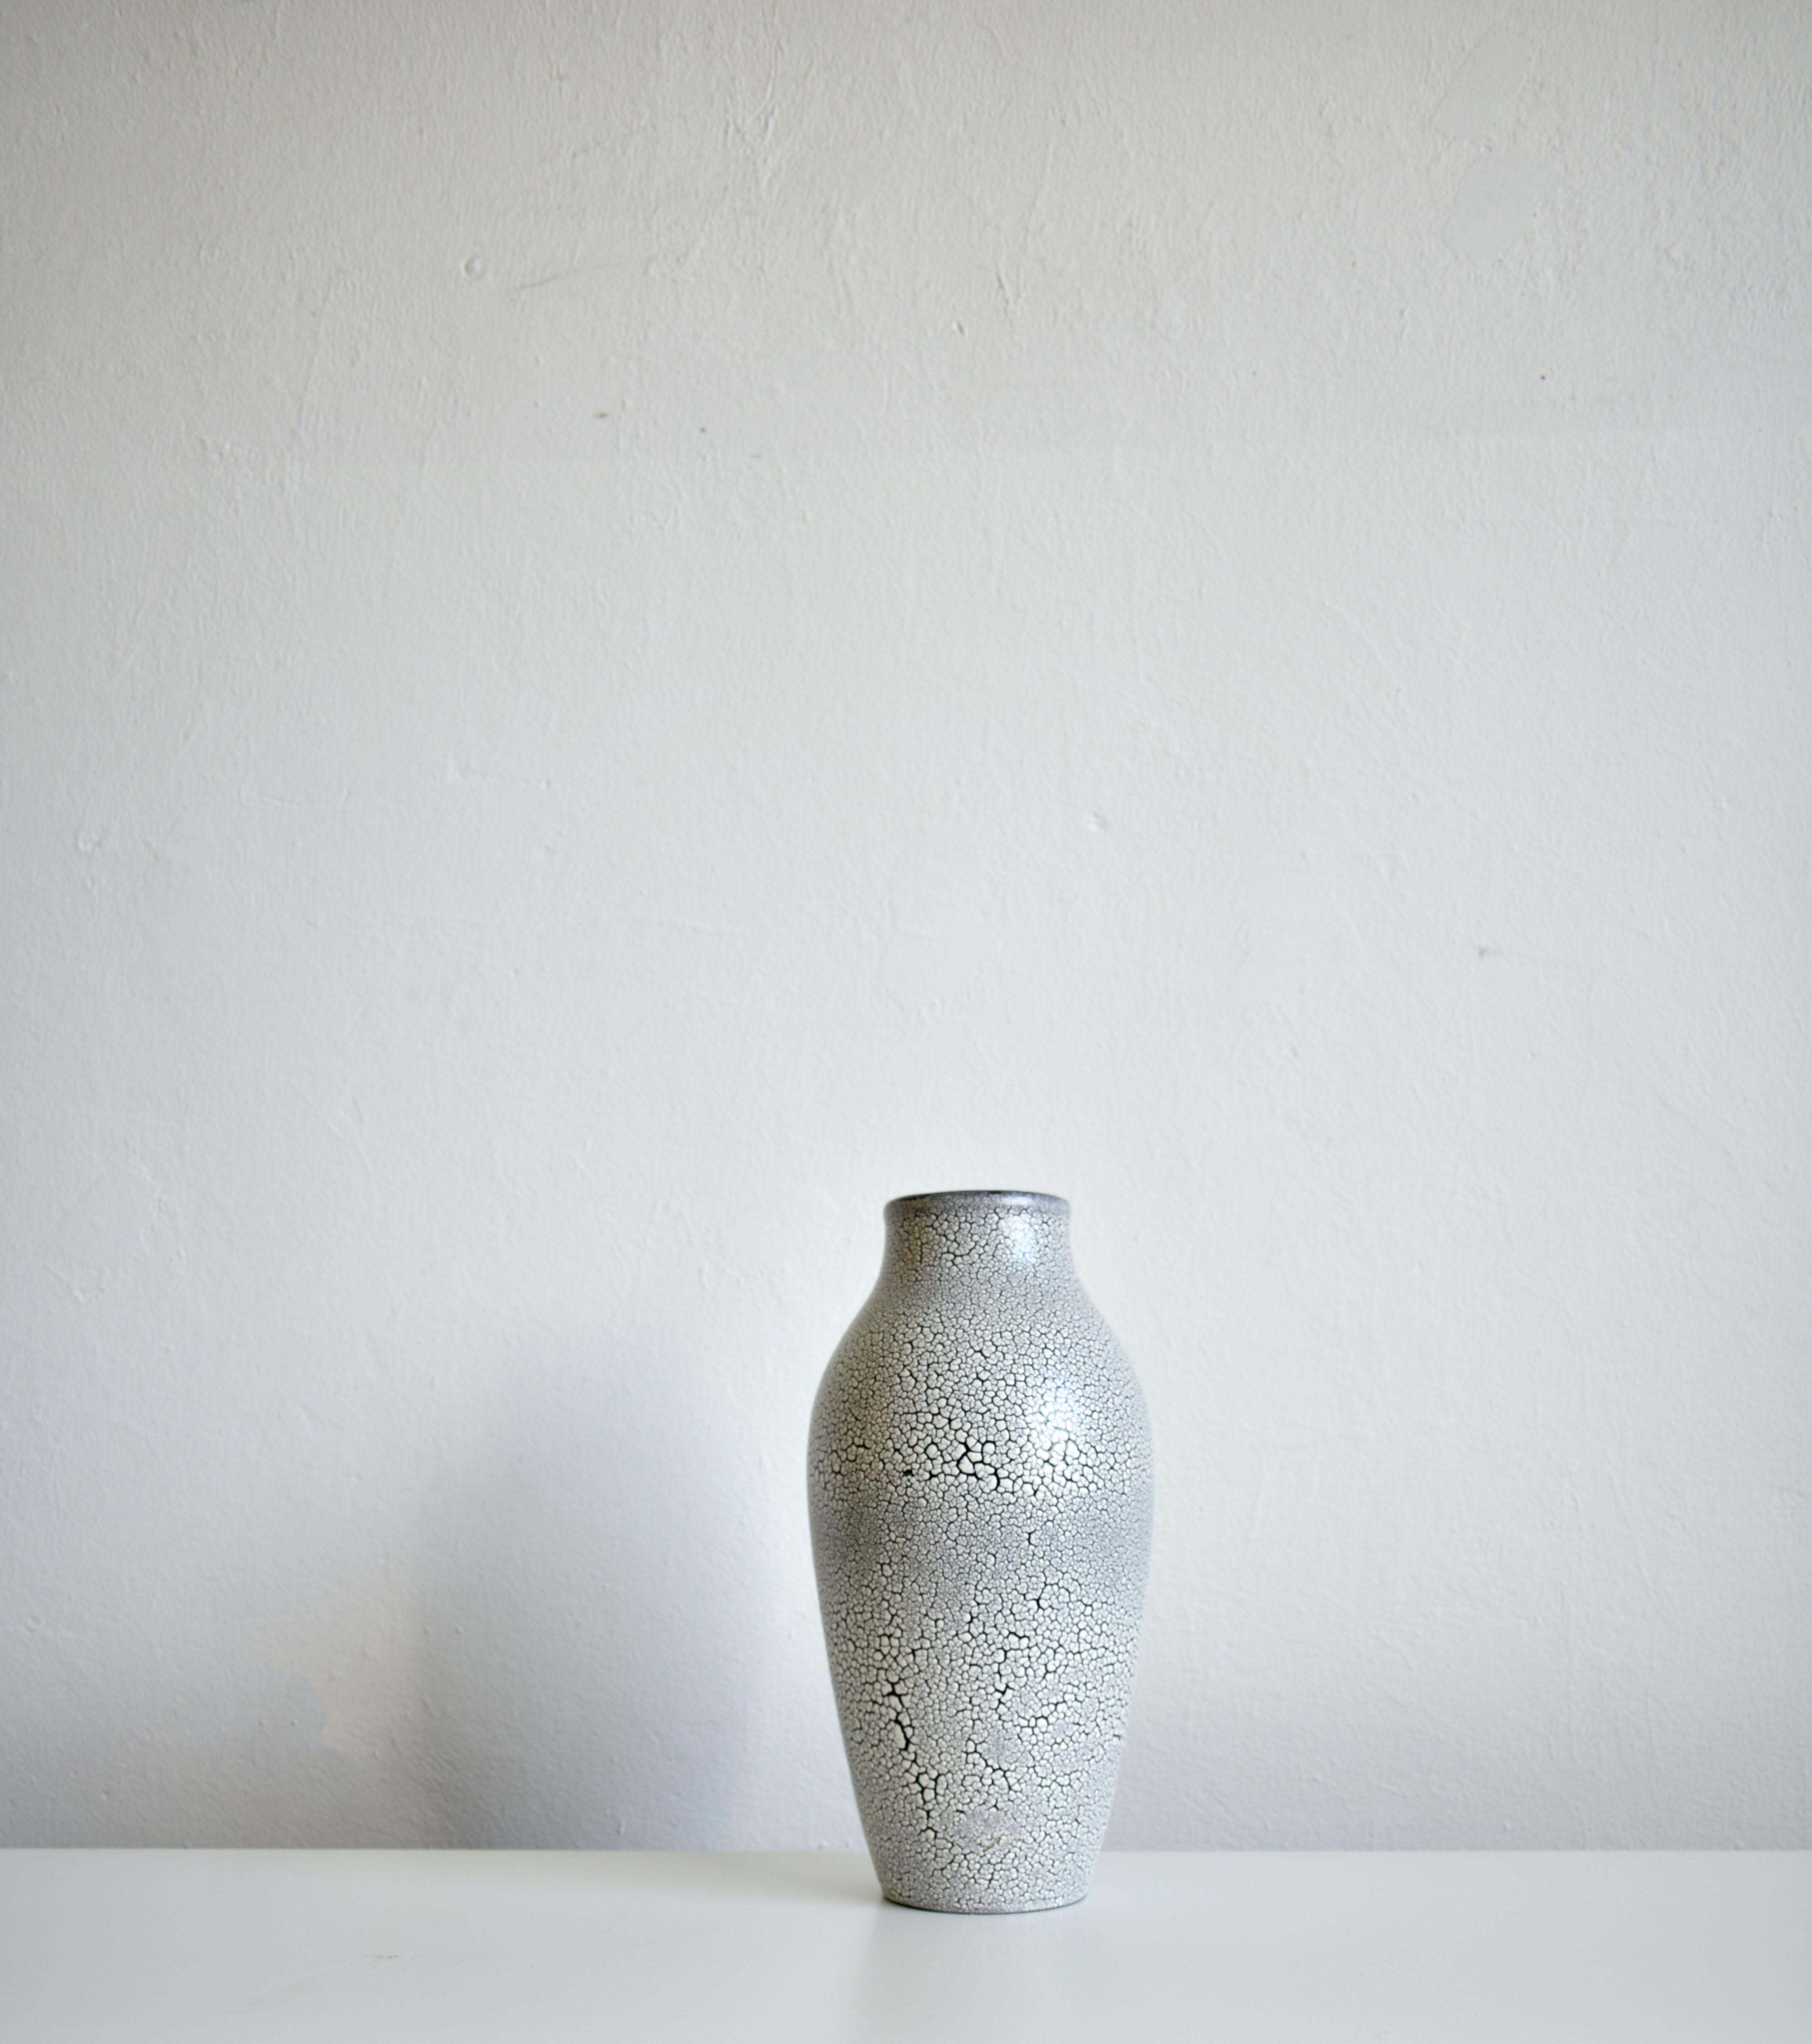 Rare vase de sol de grande taille fabriqué par Jasba Keramik 
glaçure décorative : Cortina. 

Ce vase a été conçu et introduit en 1956. Après les Jeux olympiques de Cortina d'Ampezzo en Italie. 

Basemark : W.Germany 1140 - 45 et la marque ovale